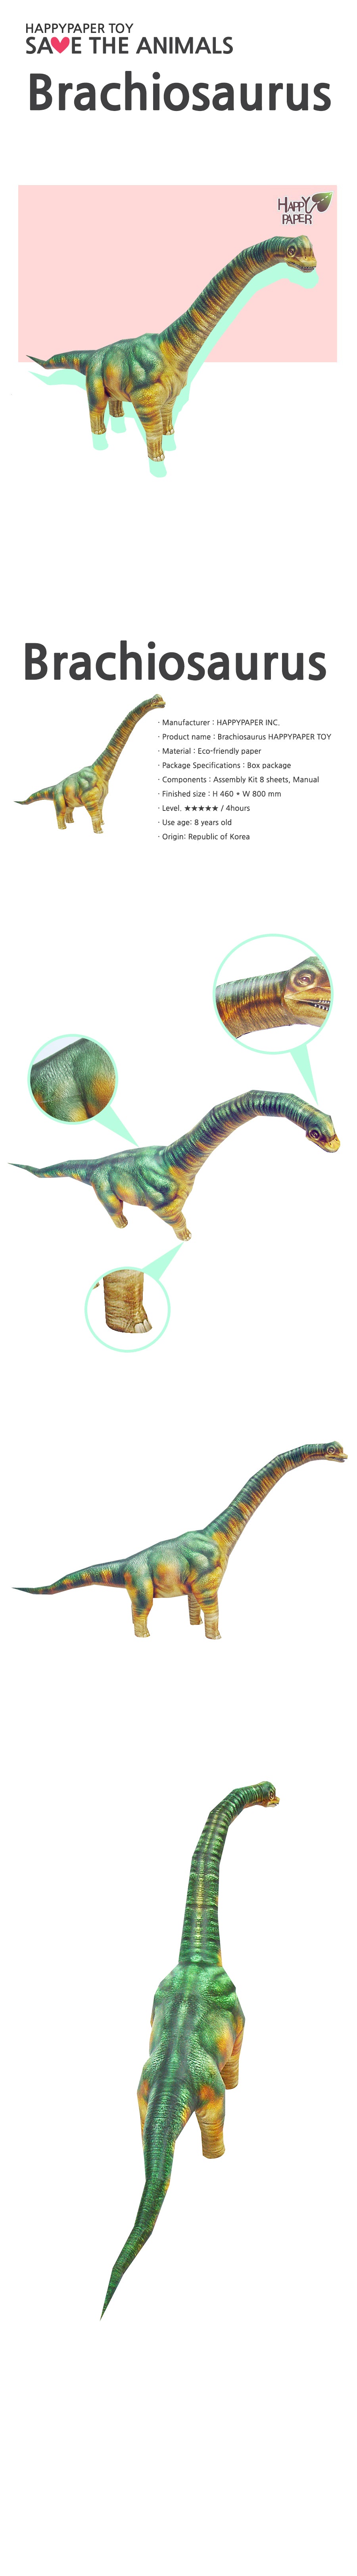 Brachiosaur 3D Paper Toy - (Brachiosaurus)